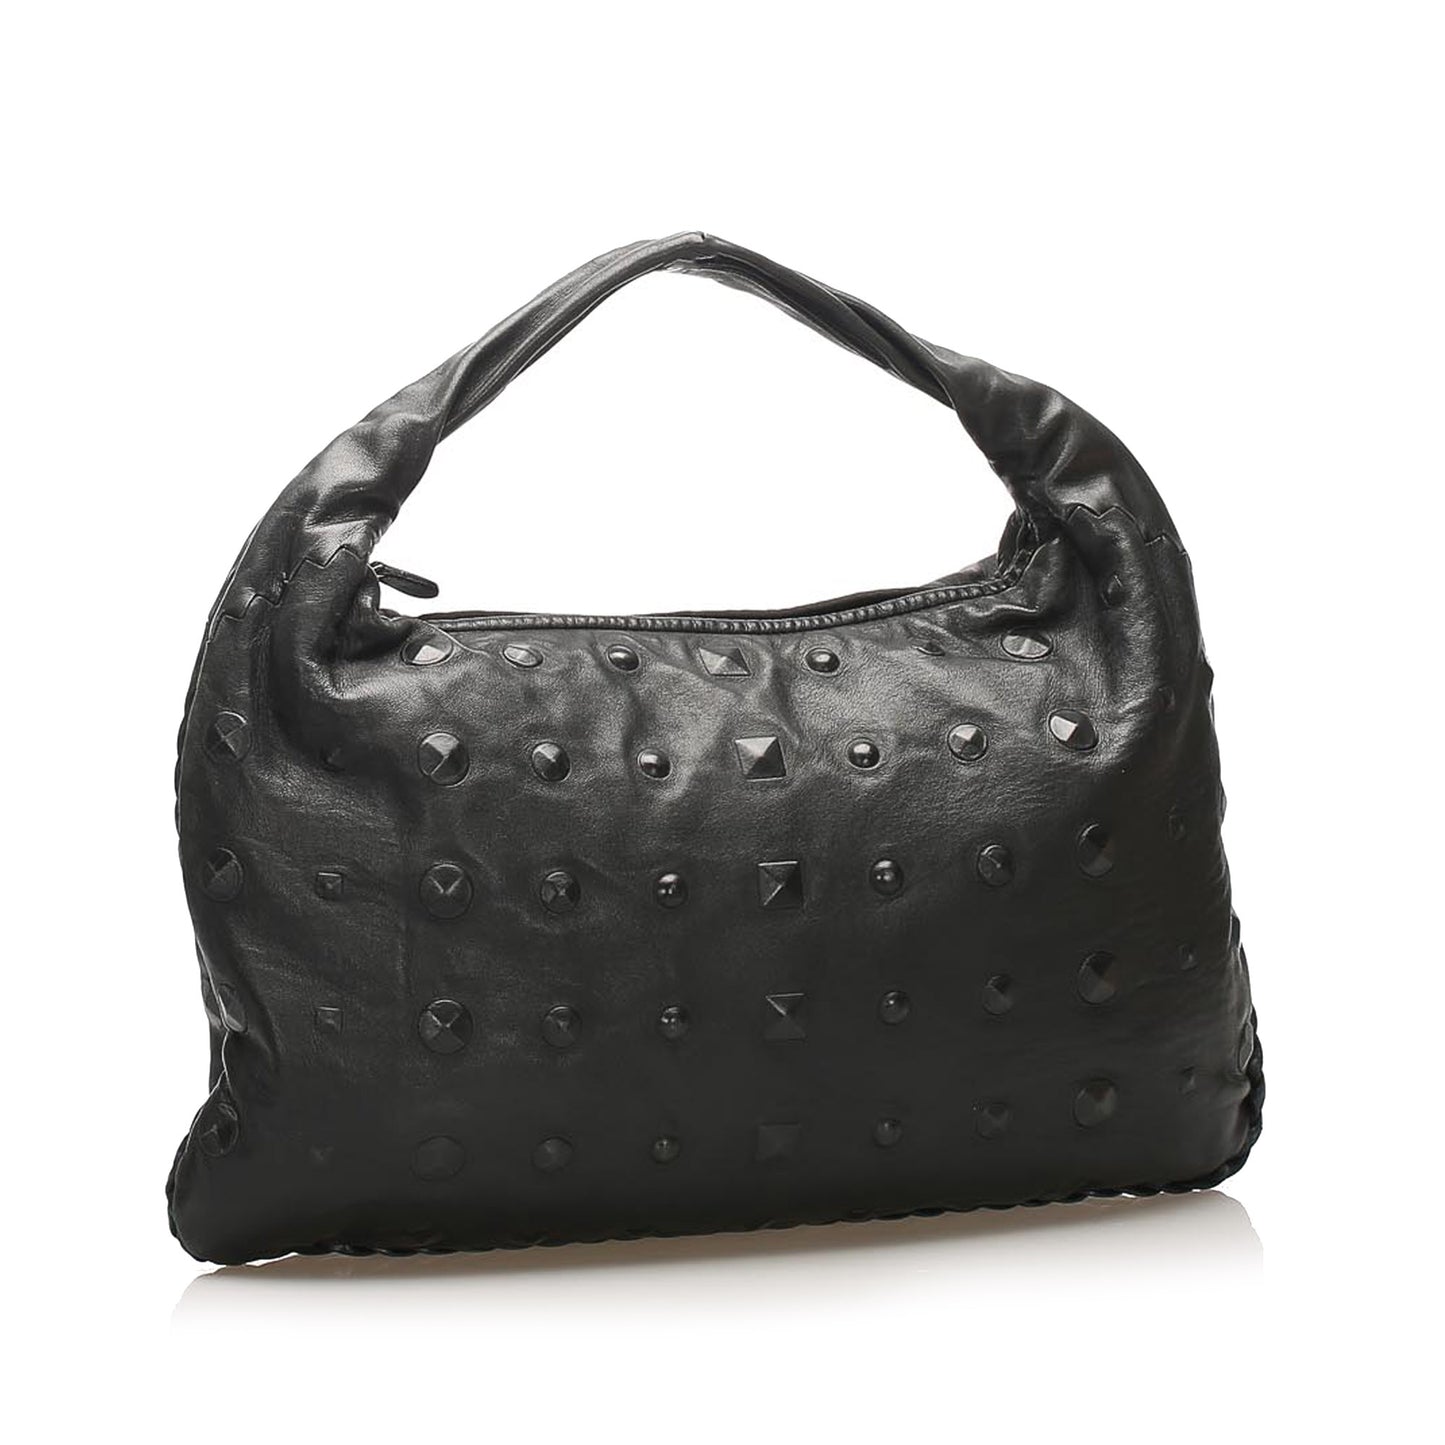 Studded Leather Hobo Bag